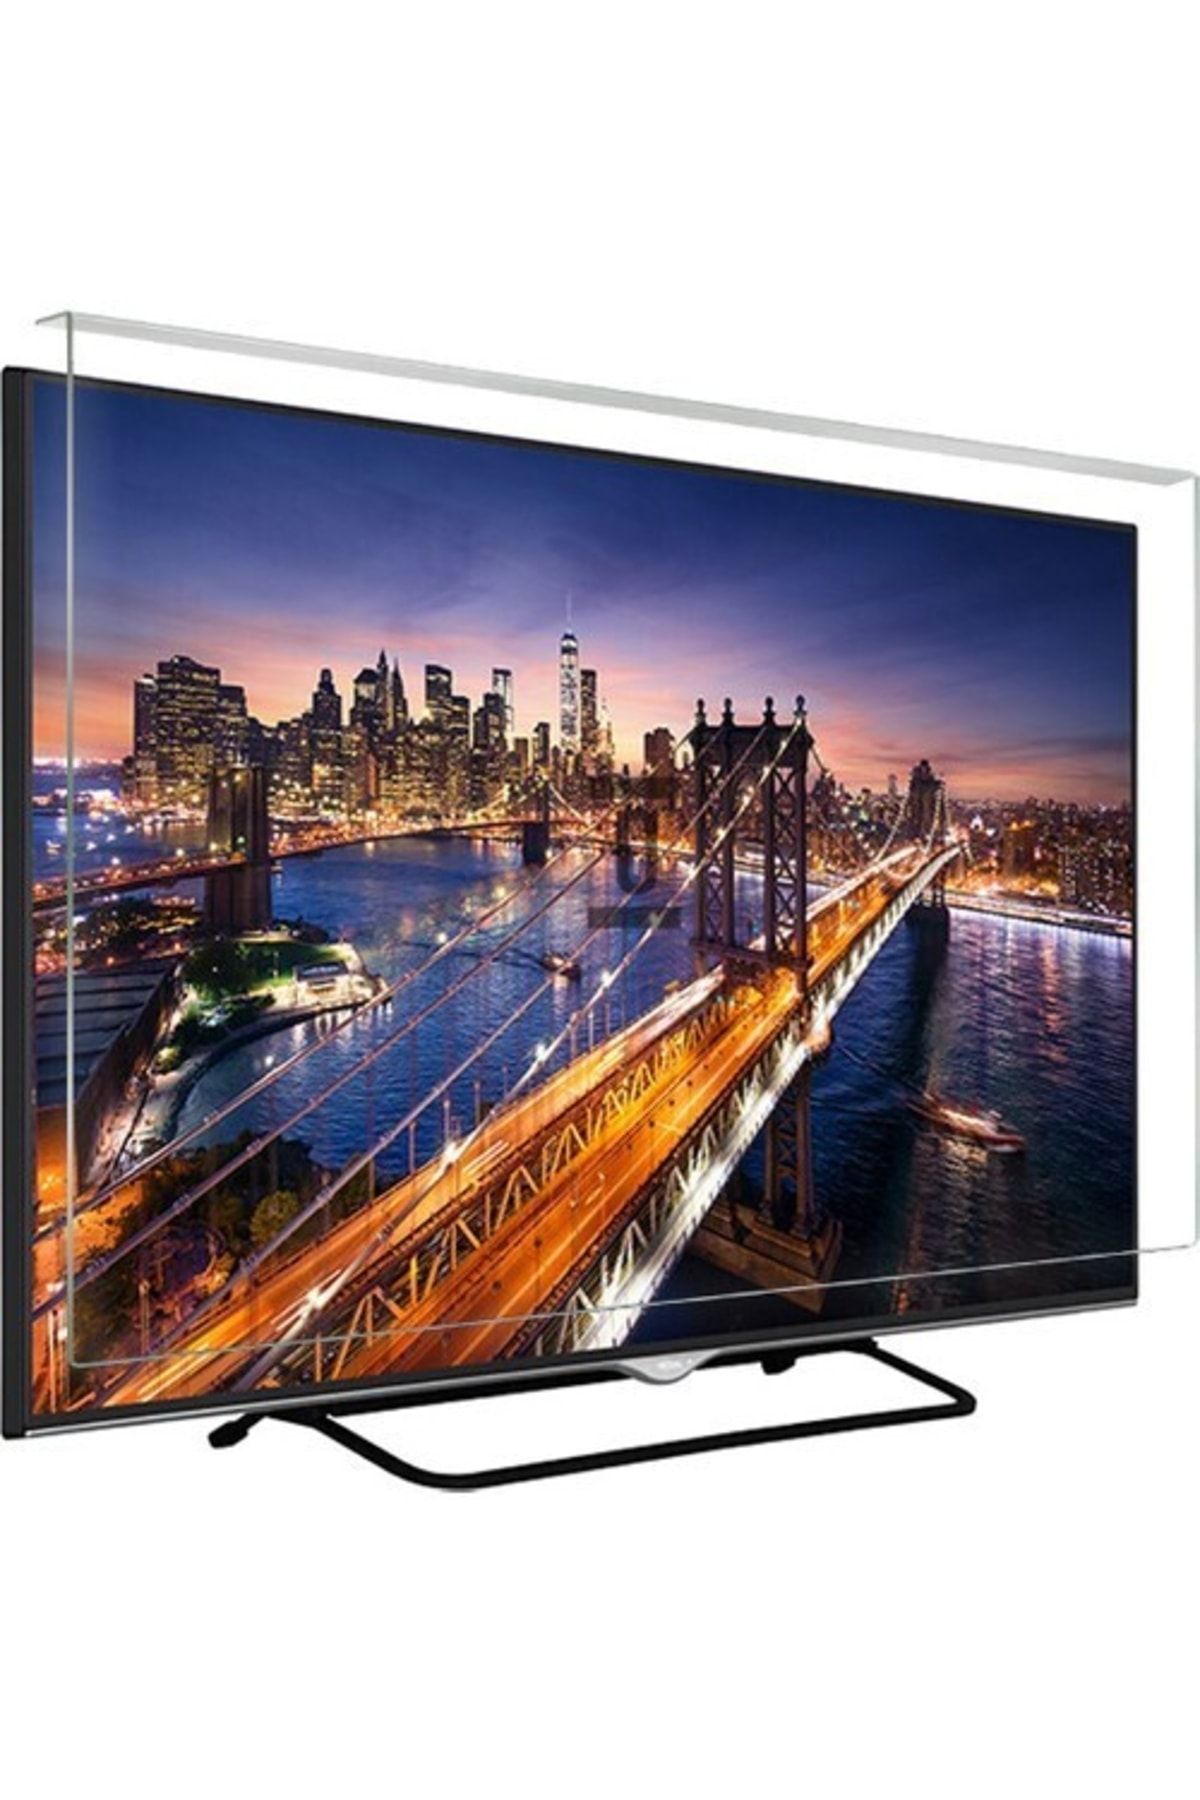 Telenova Asaf Online-evçelik 50s8002 Tv Ekran Koruyucu Düz (flat) Ekran